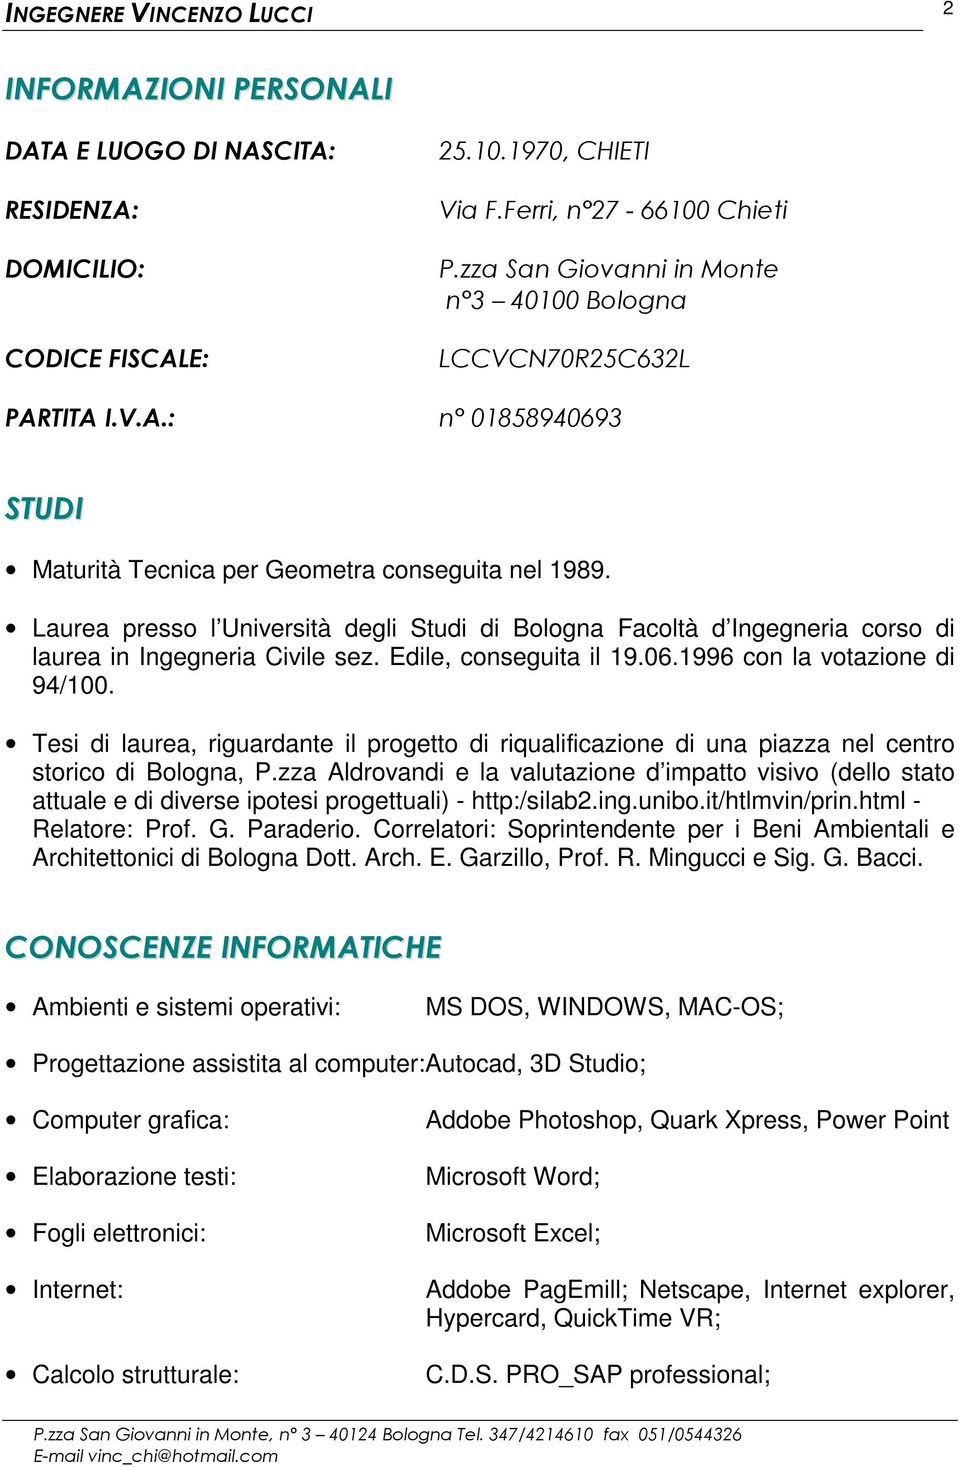 Laurea presso l Università degli Studi di Bologna Facoltà d Ingegneria corso di laurea in Ingegneria Civile sez. Edile, conseguita il 19.06.1996 con la votazione di 94/100.